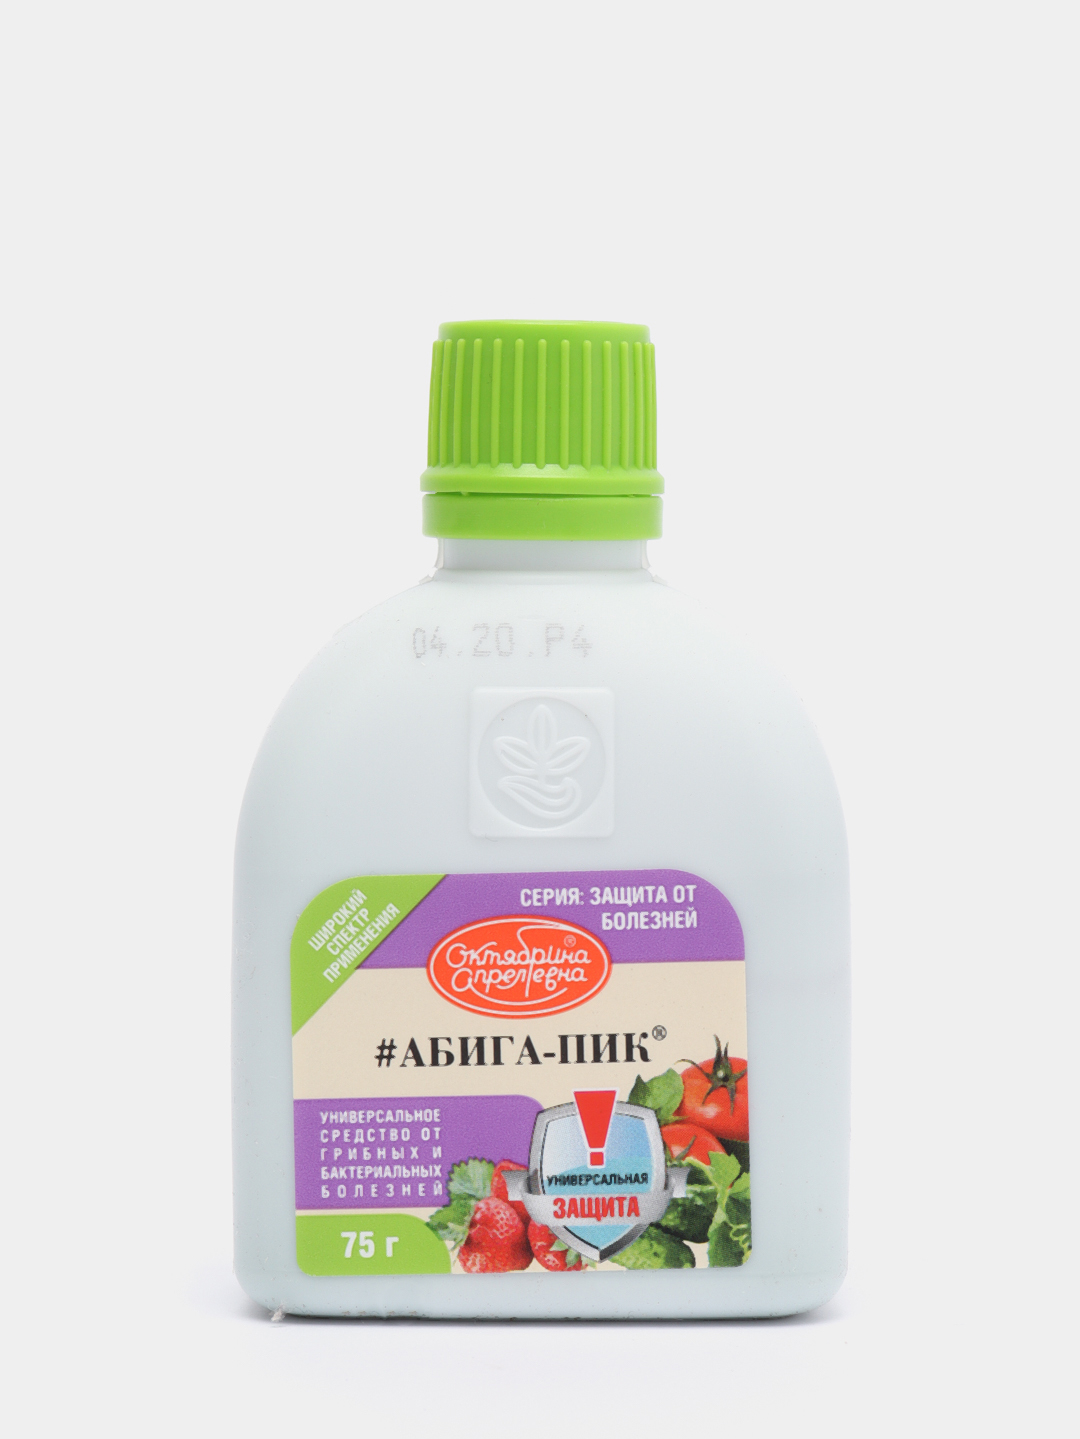 Абига пик. Абига пик + борная кислота. Абига пик зеленая аптека садовода. Средство от болезней Абига-пик.